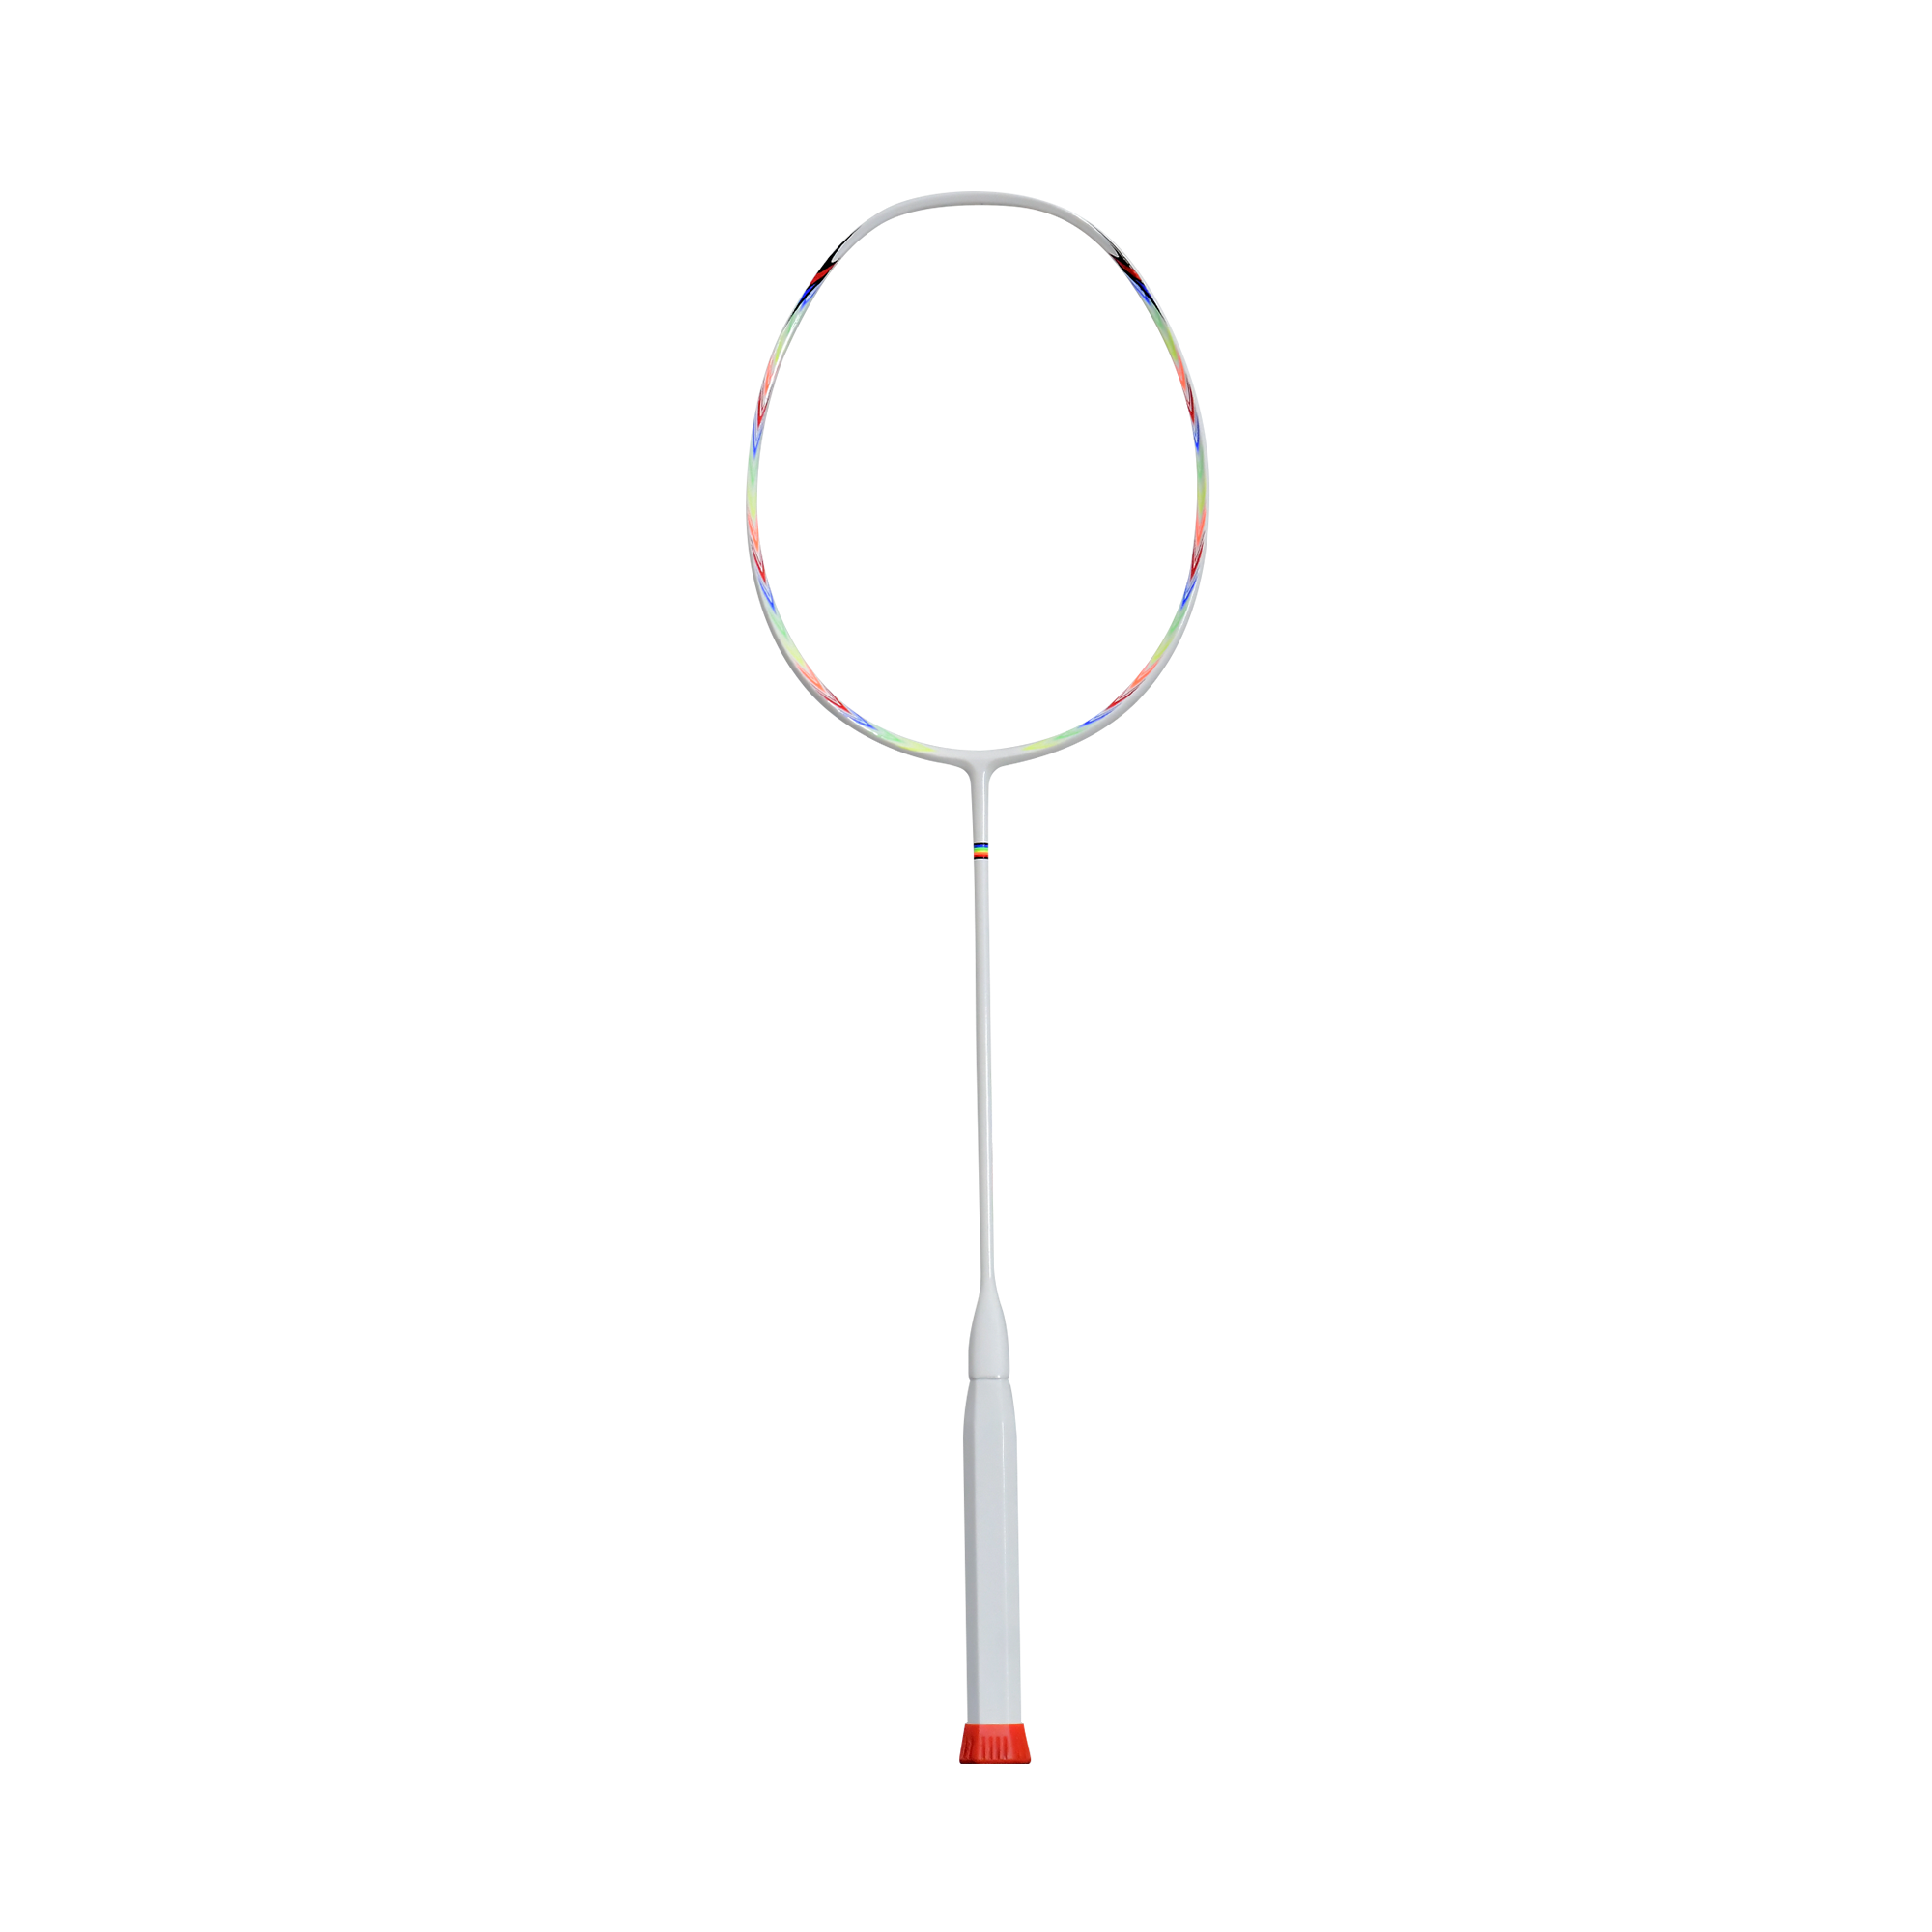 ไม้แบดมินตันน้ำหนักเบา 6 u badminton ไม้แบดราคาถูก ยี่ห้อ Klint สีขาวมีสีเอ็นให้เลือกตามสไตล์